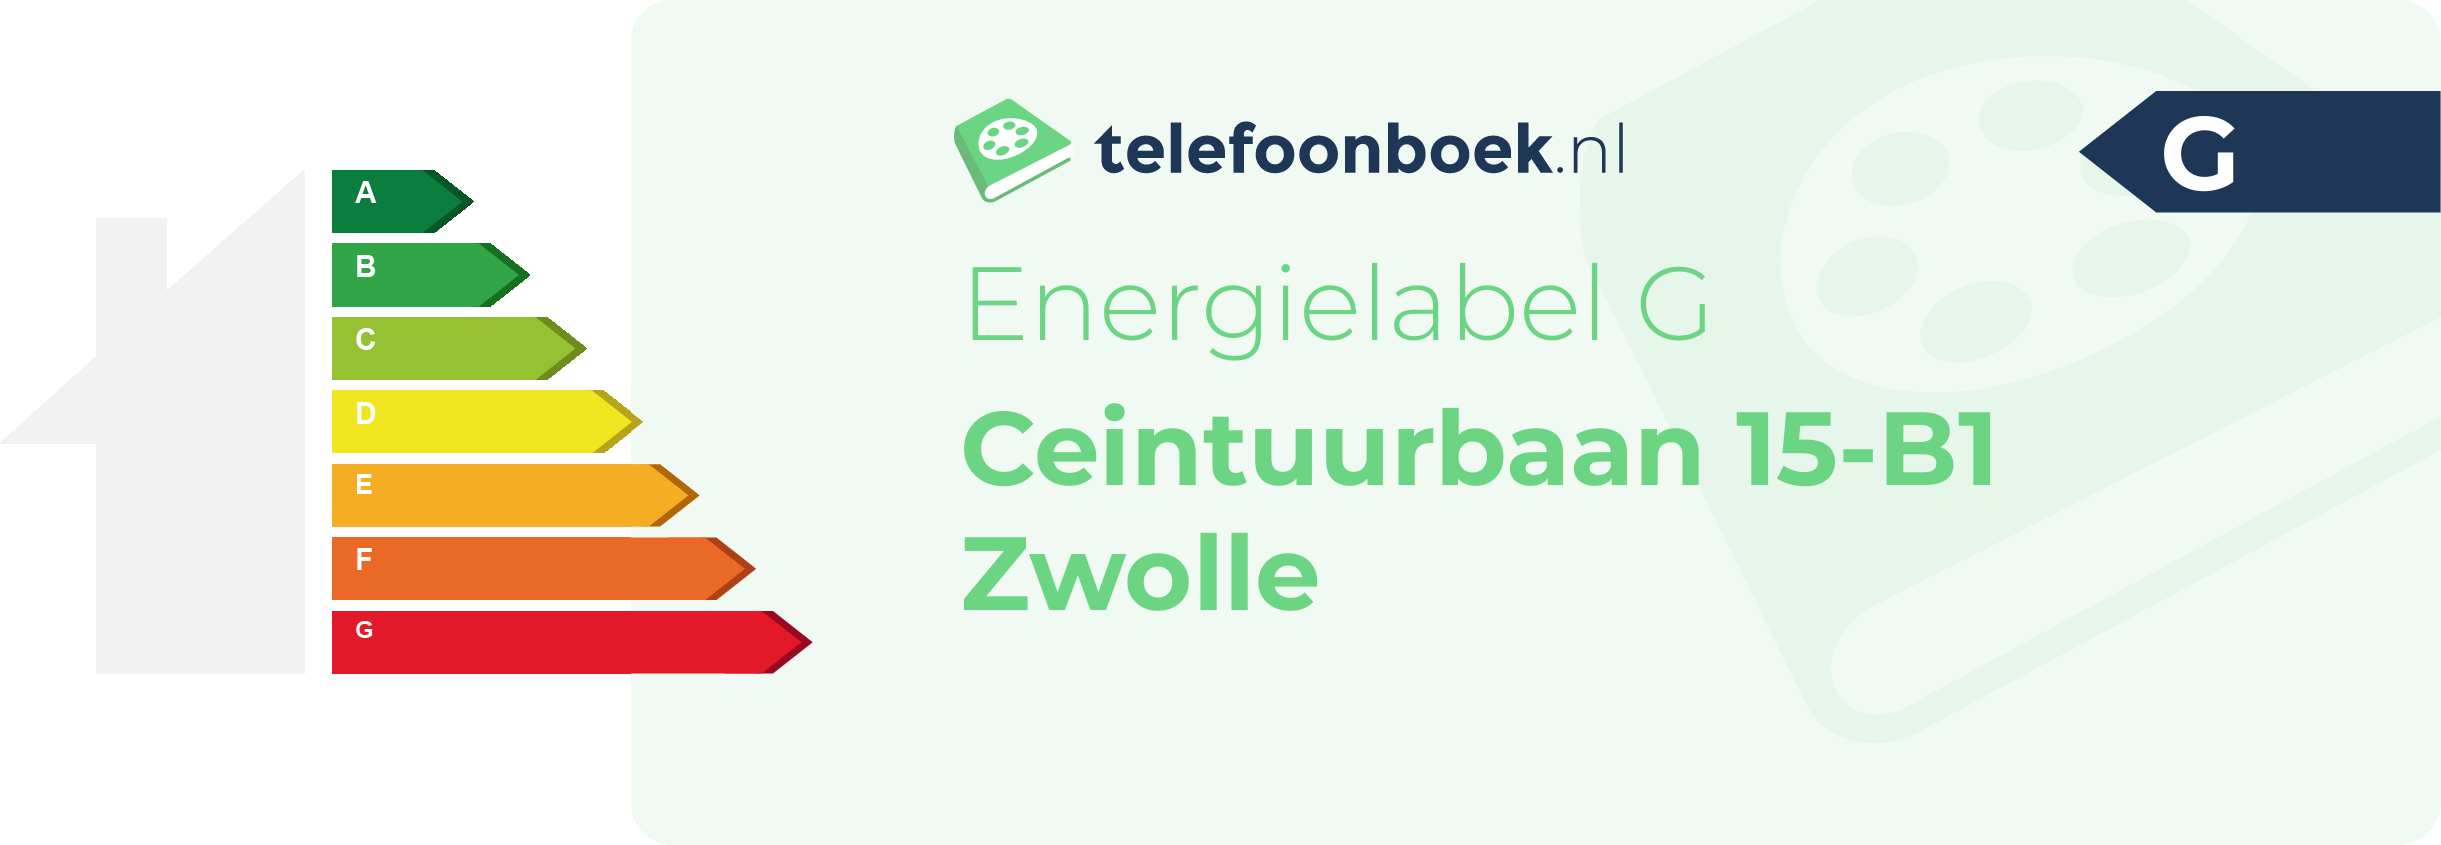 Energielabel Ceintuurbaan 15-B1 Zwolle